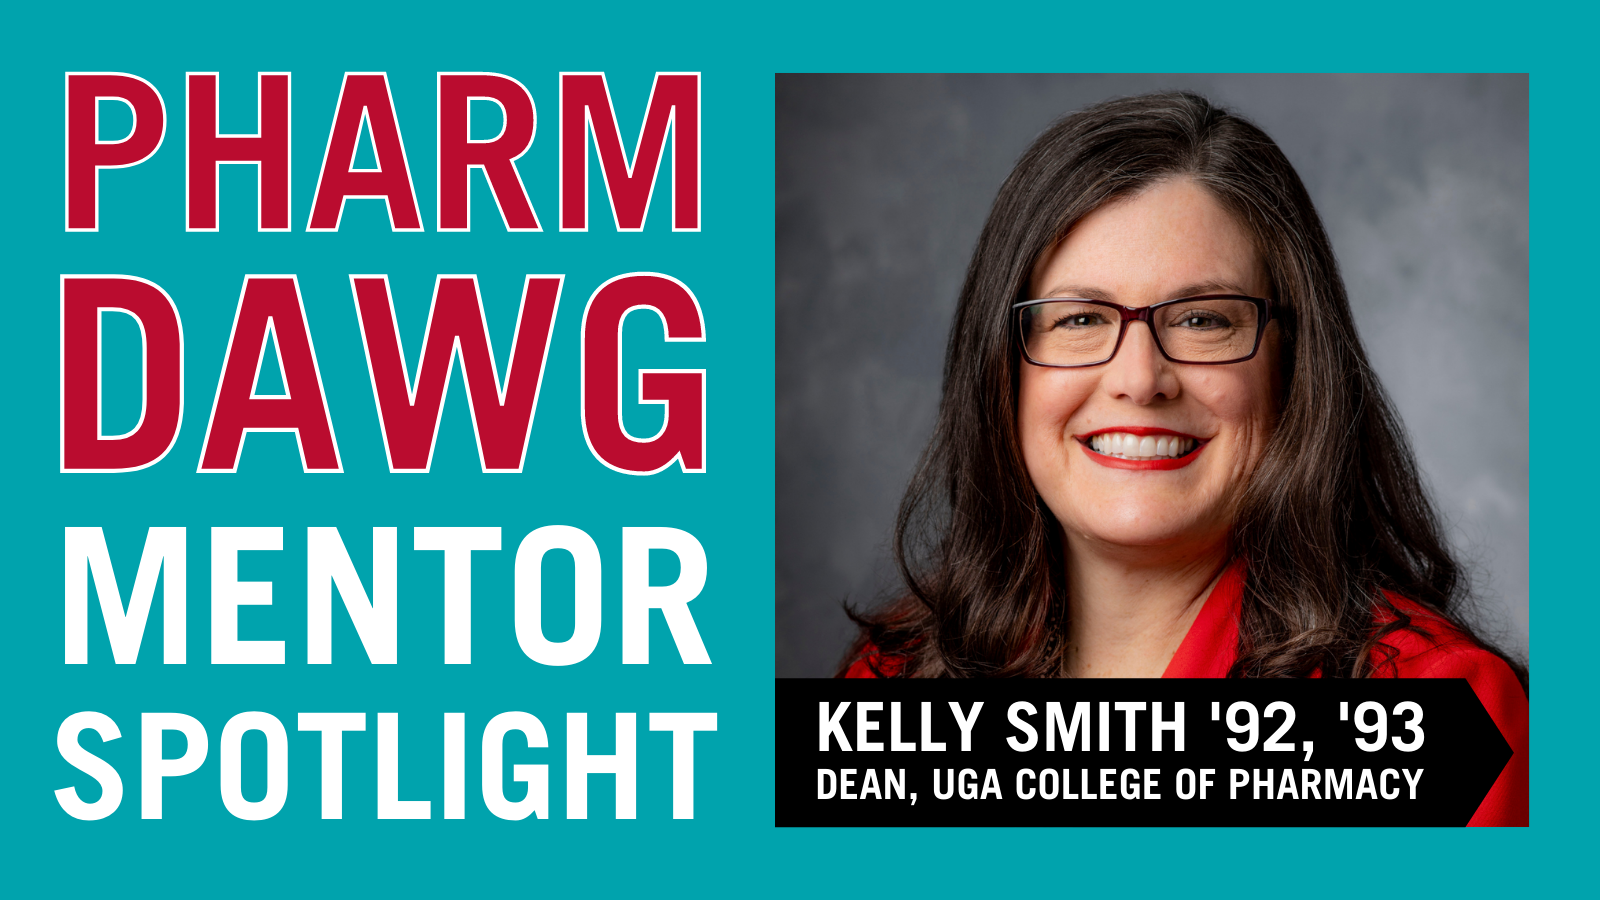 PharmDawg Mentor Spotlight: Dean Kelly Smith ’92, ’93